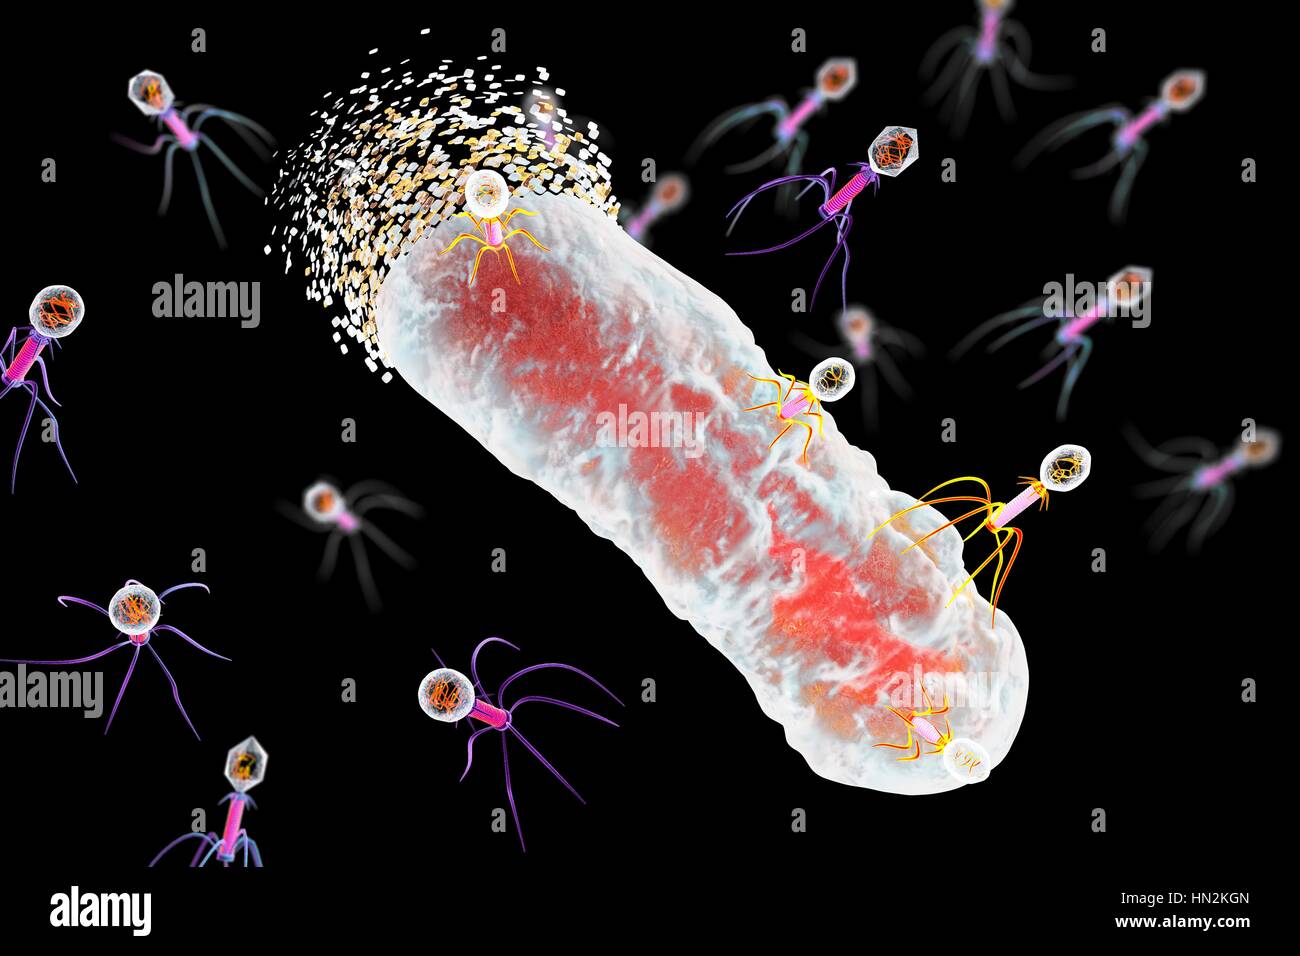 Bakteriophagen Infektion Bakterien, Computer Bild. Ein Bakteriophagen oder Phagen, ist ein Virus, der Bakterien infiziert. Es besteht aus einem ikosaedrischen (20-seitige) Kopf, enthält das genetische Material, einen Schweif und Schweif Fasern, die ihn zu einer spezifischen Rezeptor-Website auf das Bakterium zu reparieren. Das Heck des genetischen Materials in das Bakterium injiziert, und die zelluläre Maschinerie des Bakteriums wird verwendet, um mehrere Kopien des Virus zu produzieren. Stockfoto